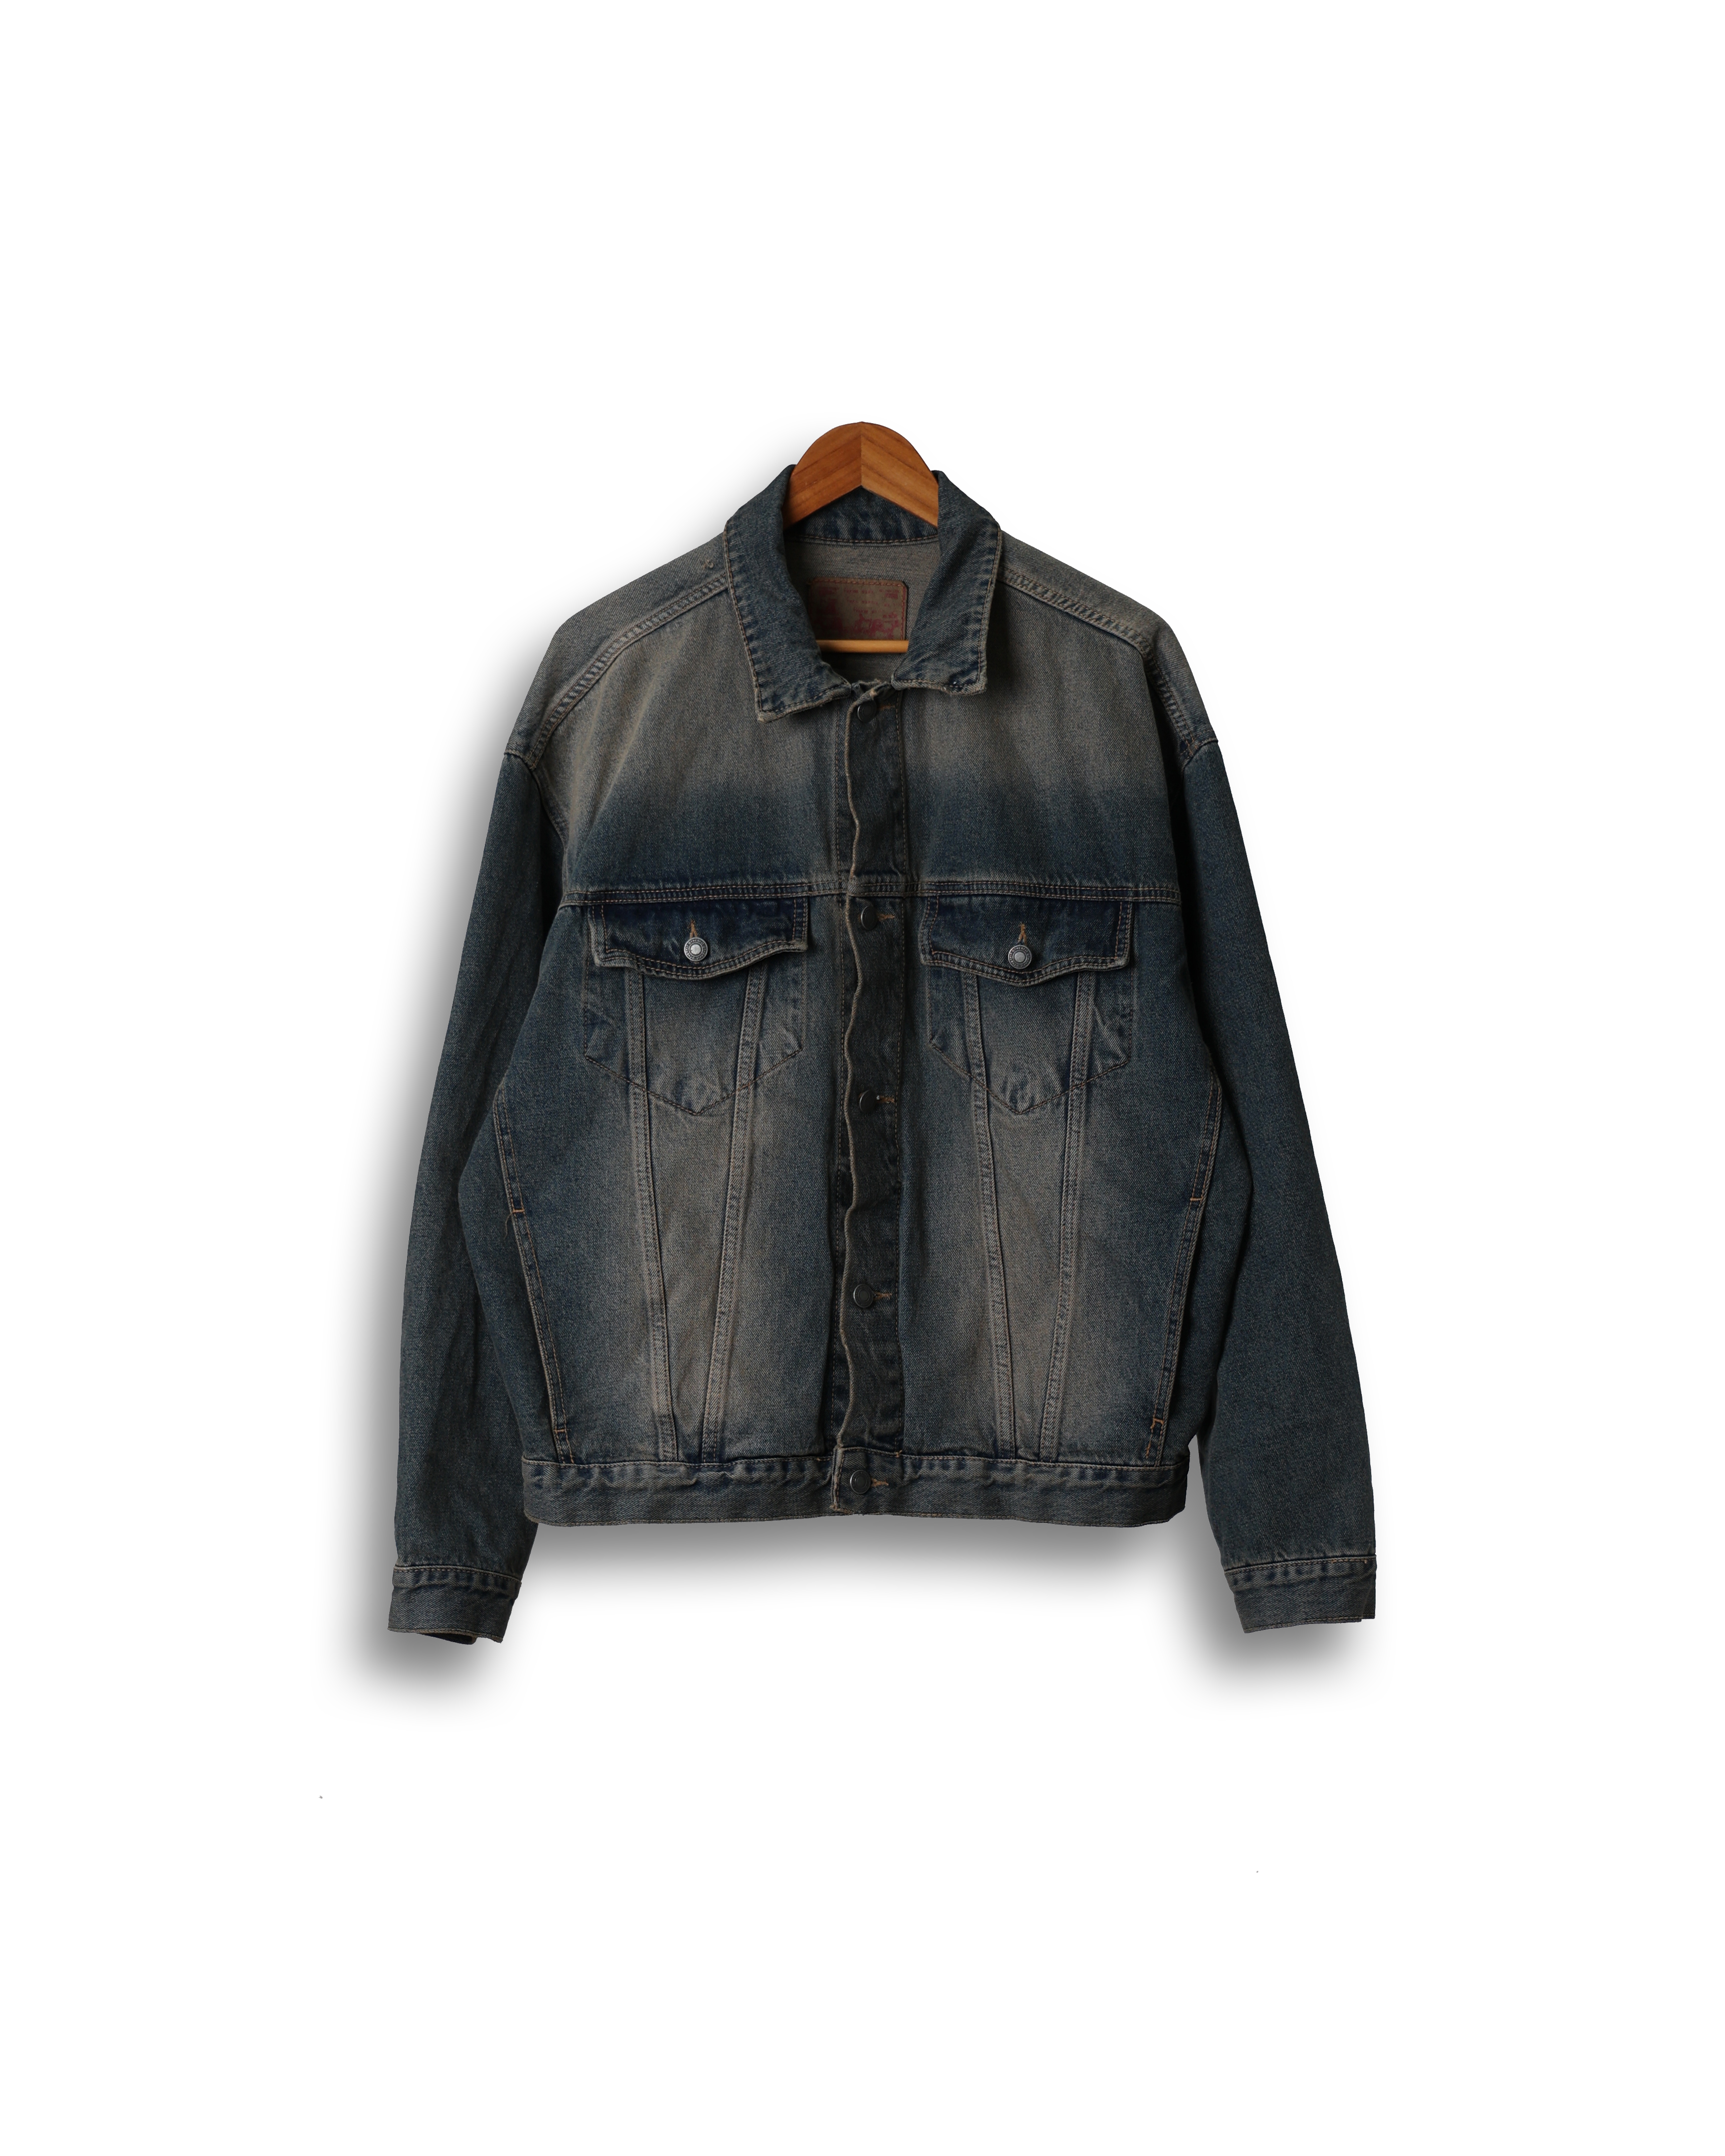 FITS 370 Dying Vintage Over Denim Jacket (Blue Denim)